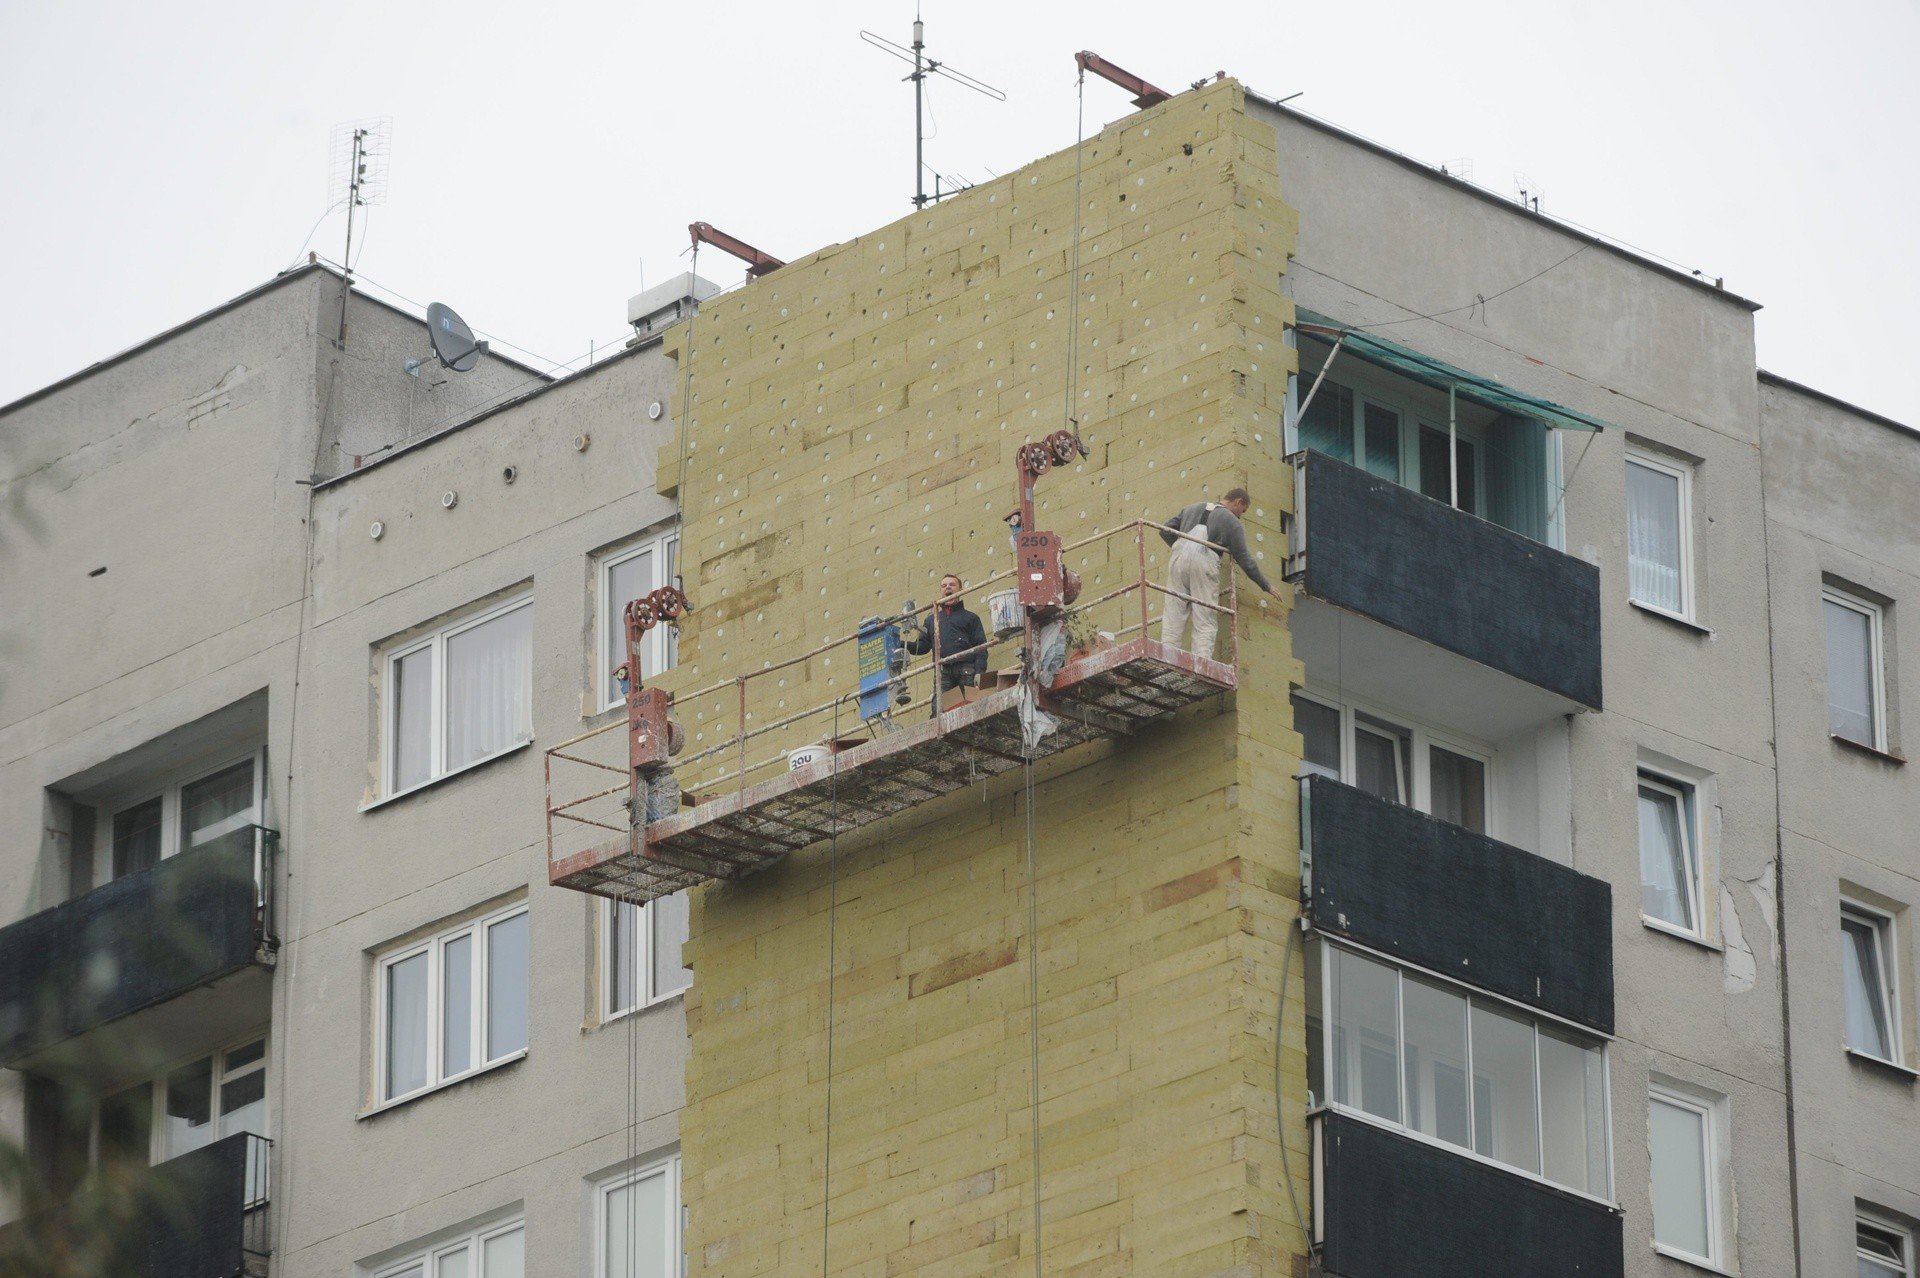 Premier zapowiada rewitalizację bloków z wielkiej płyty. Co jeszcze miałoby  zostać odnowione? | Portal i.pl